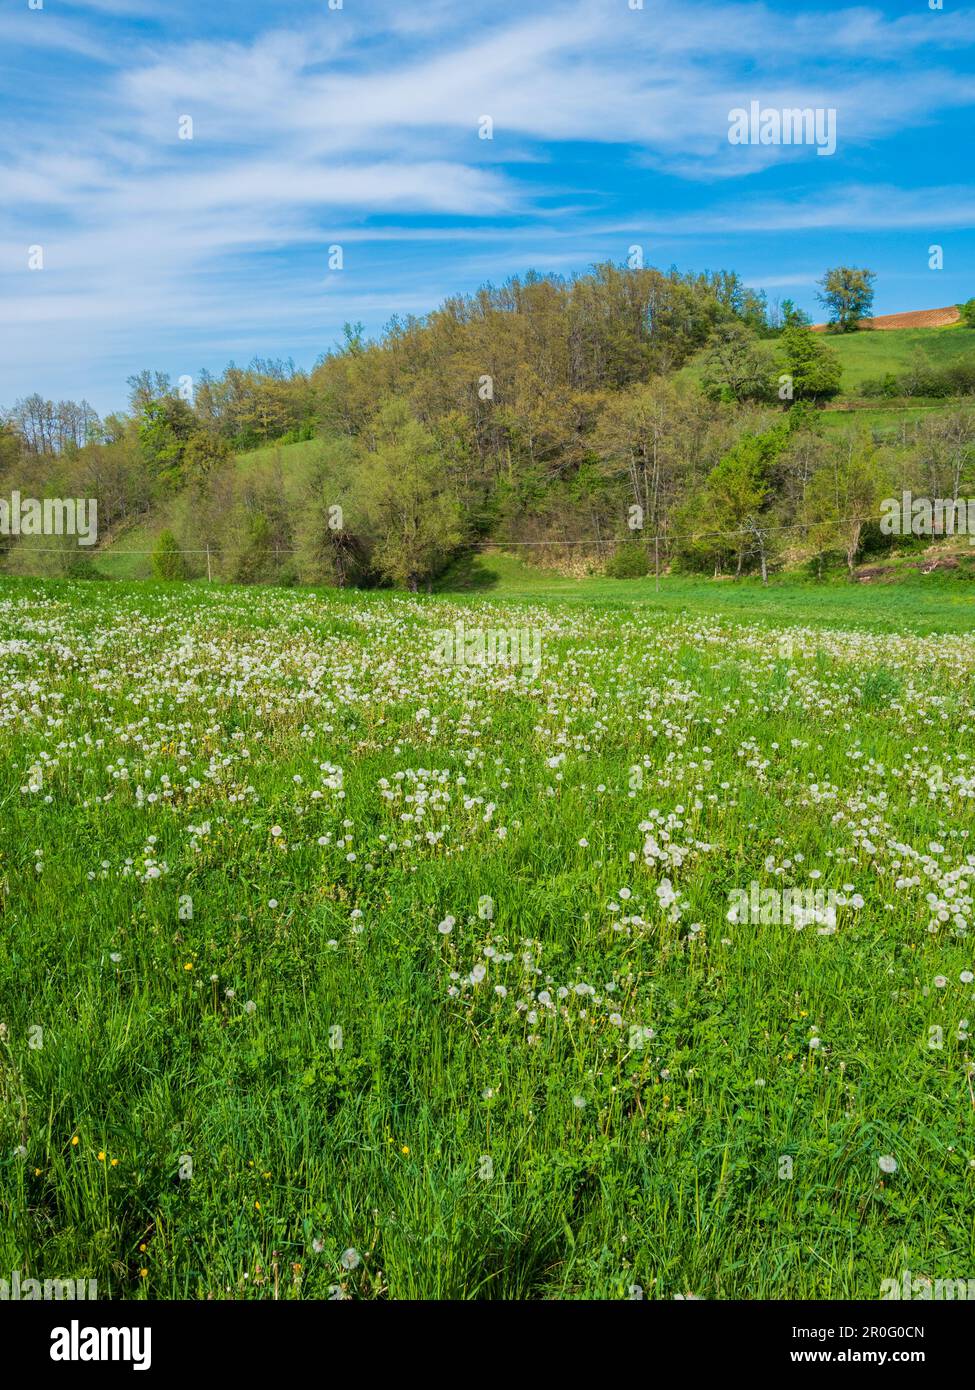 Verde prato fiorito in primo piano con una collina sullo sfondo Foto Stock